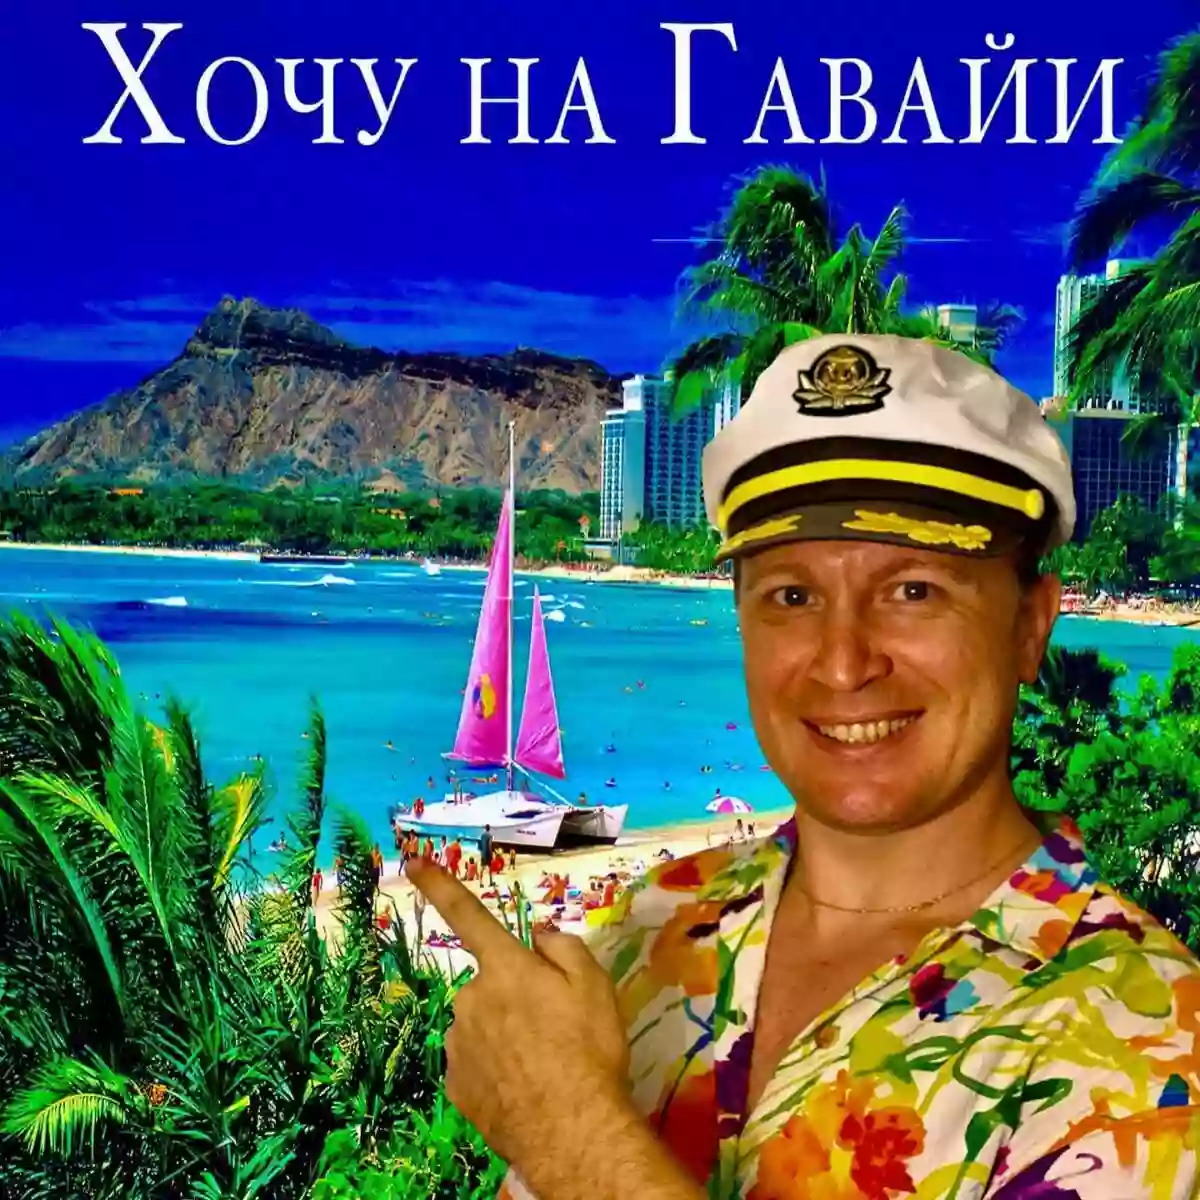 Hawaii Russian Tours, Inc